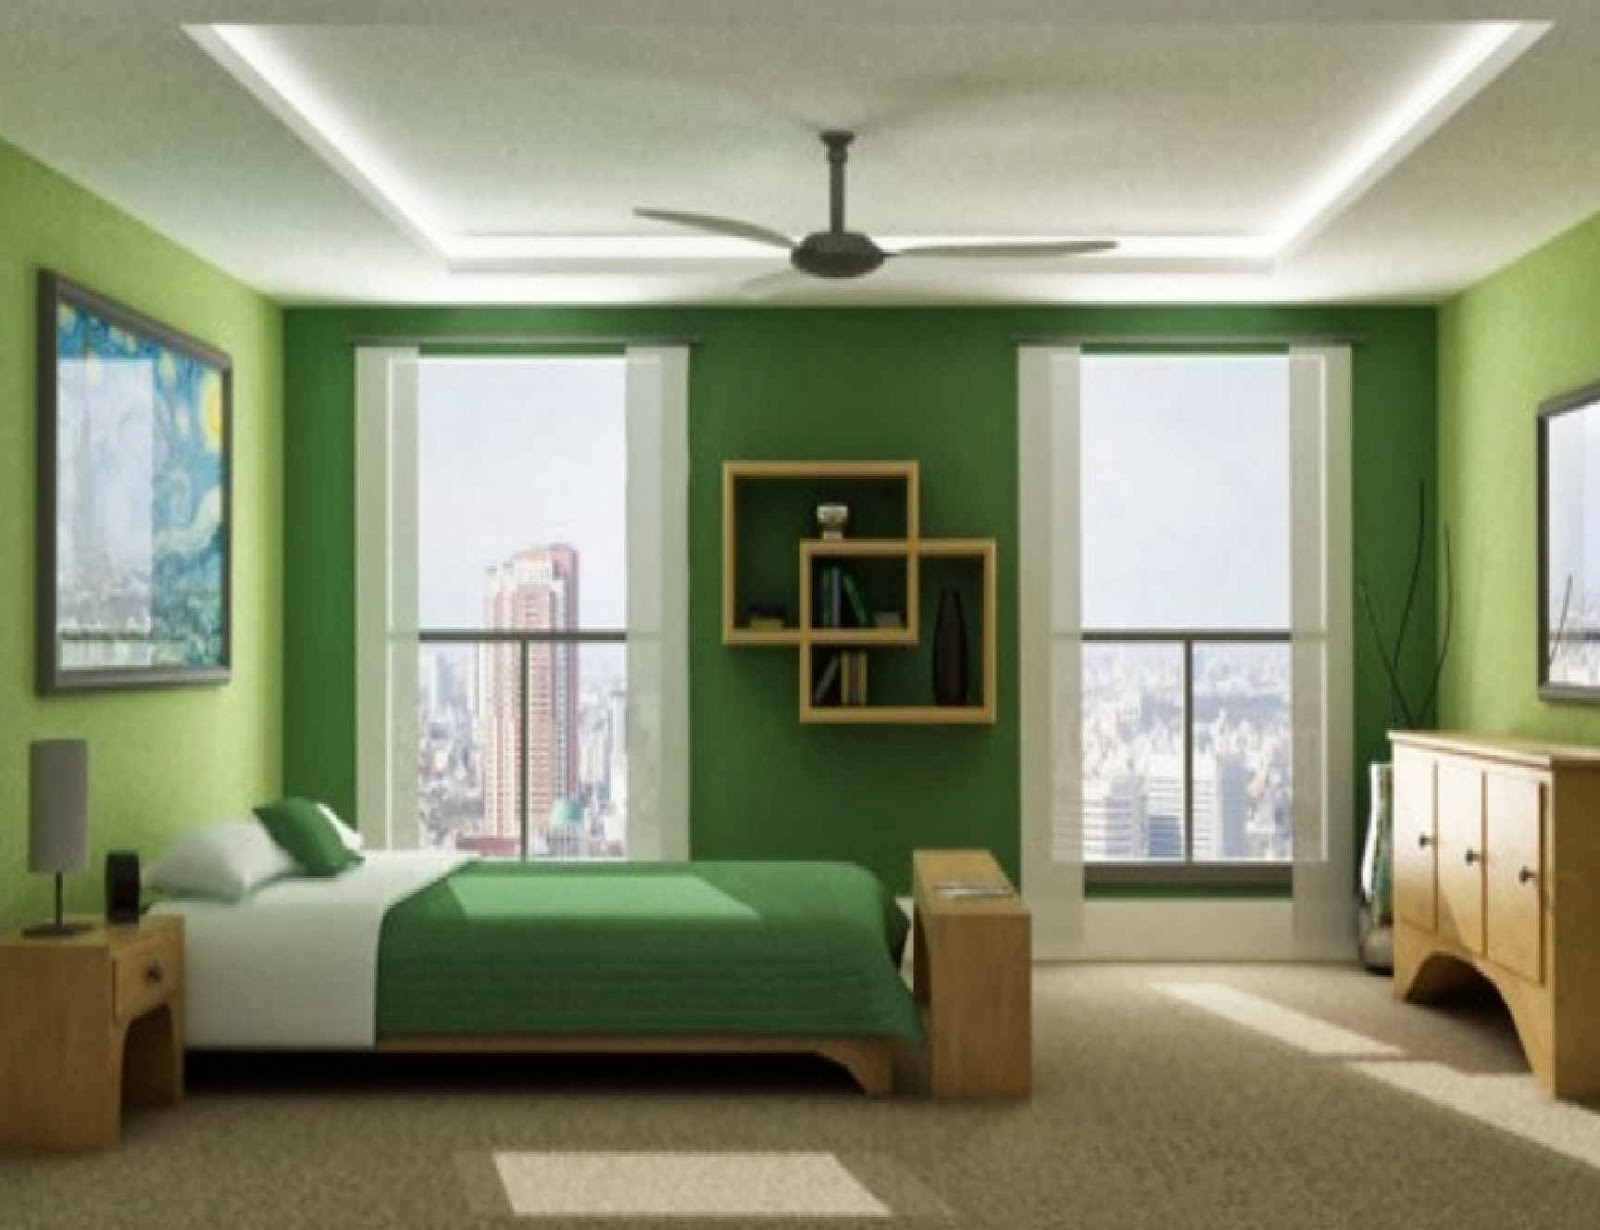 Gambar Rumah Modis Update Contoh Desain Kamar Tidur Ruangan Yang Sempit